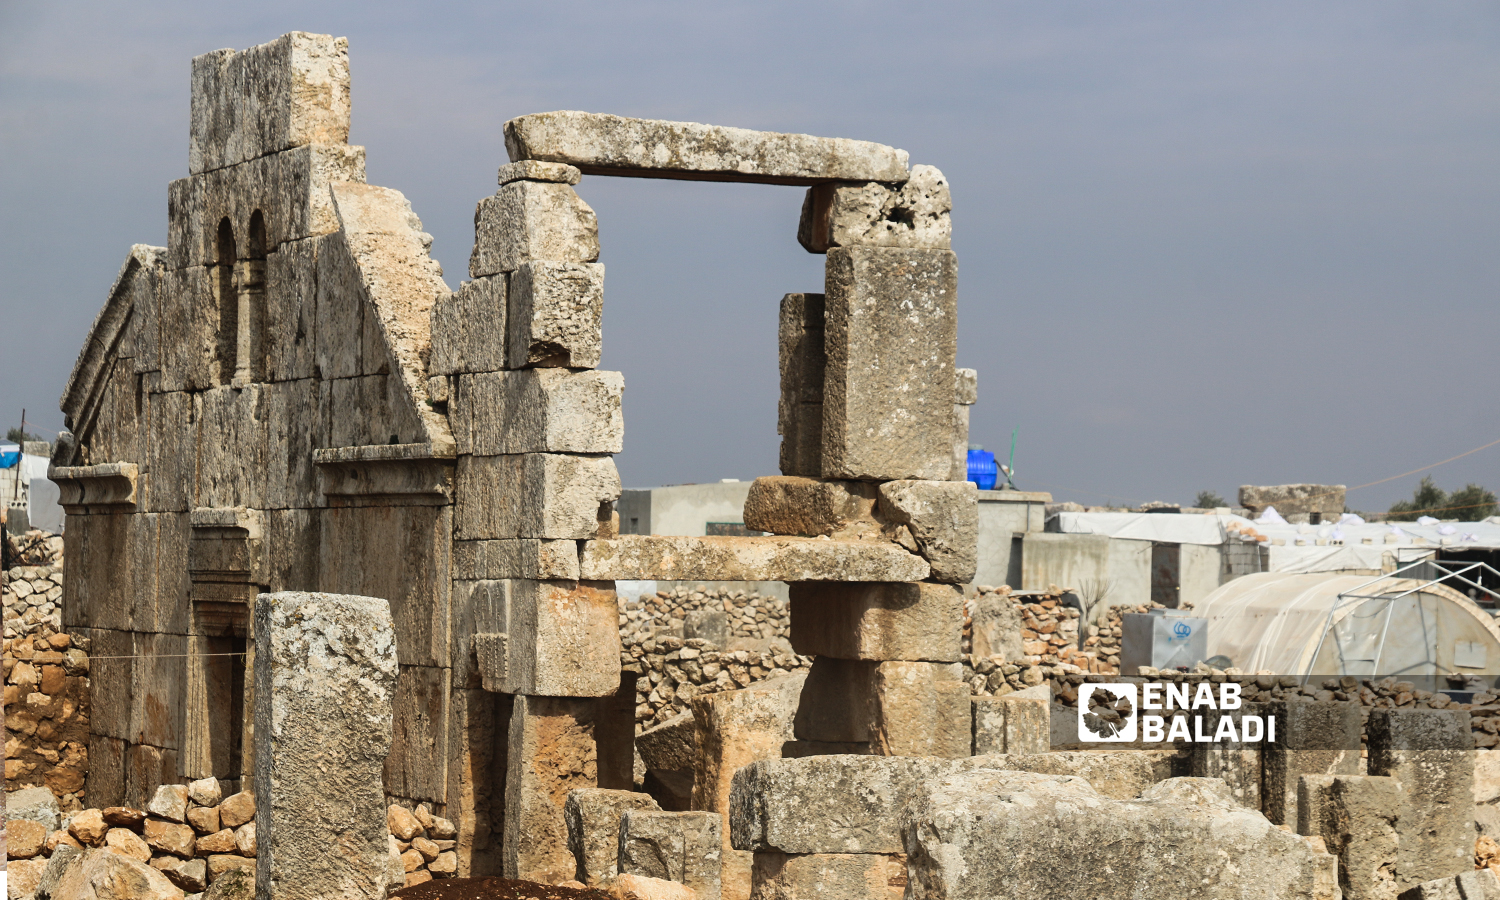 موقع أثري يحتوي بقايا كنيسة وبرج في منطقة سرجبلة الأثرية في ريف إدلب الشمالي 22 كانون الثاني 2022 (عنب بلدي / إياد عبد الجواد)
